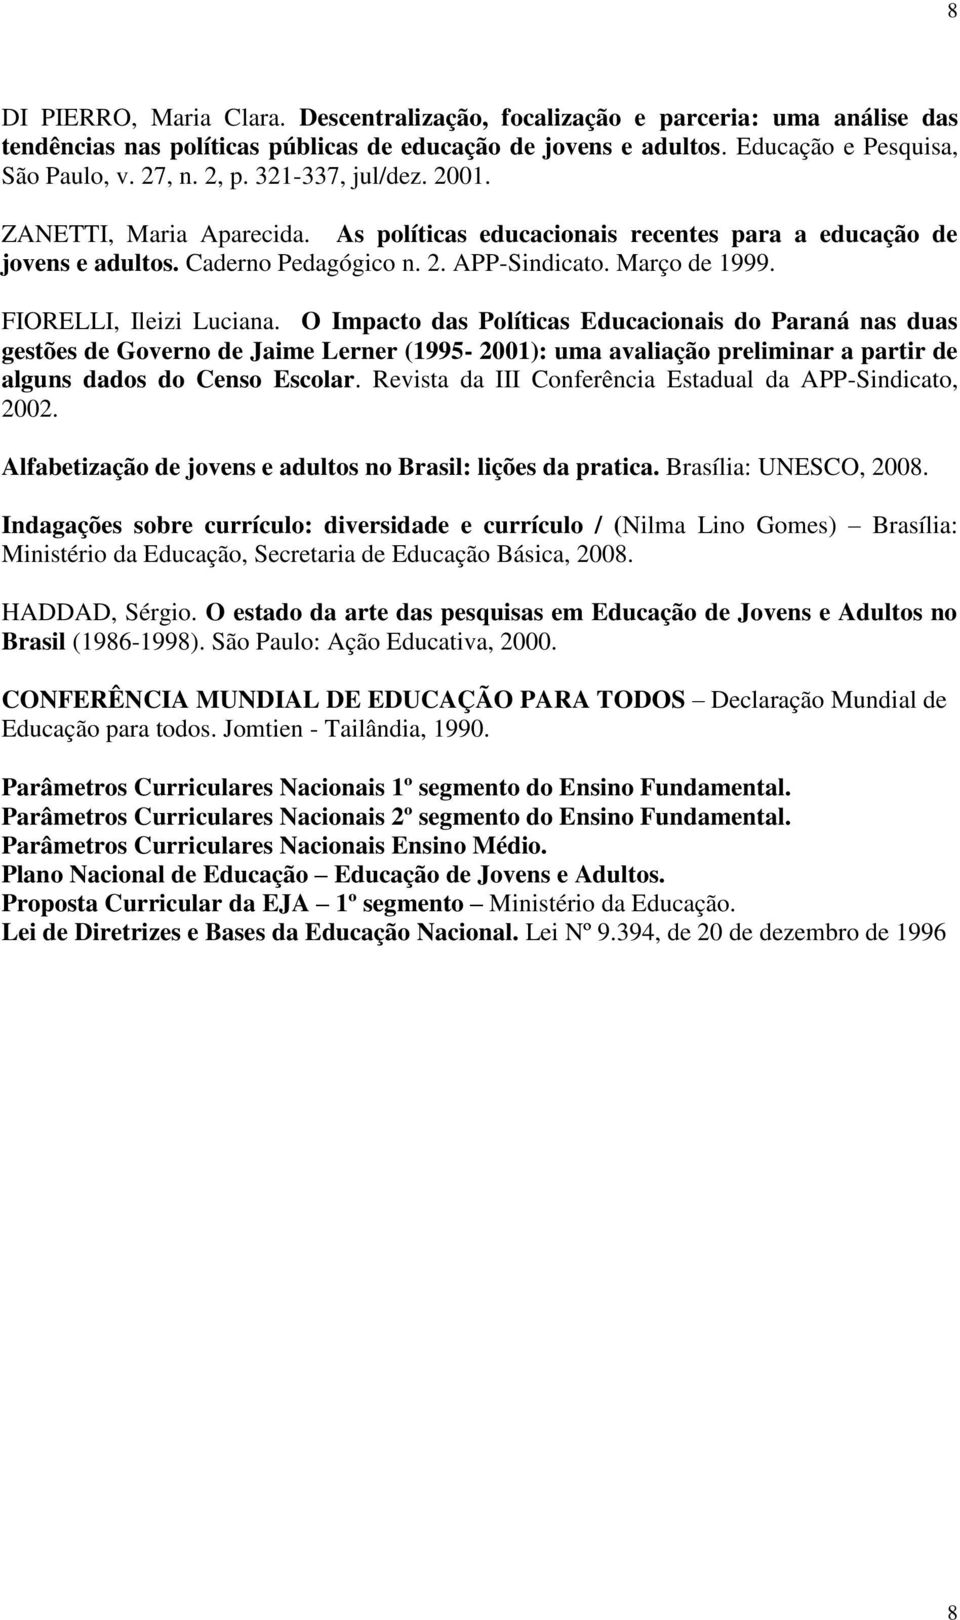 FIORELLI, Ileizi Luciana. O Impacto das Políticas Educacionais do Paraná nas duas gestões de Governo de Jaime Lerner (1995-2001): uma avaliação preliminar a partir de alguns dados do Censo Escolar.